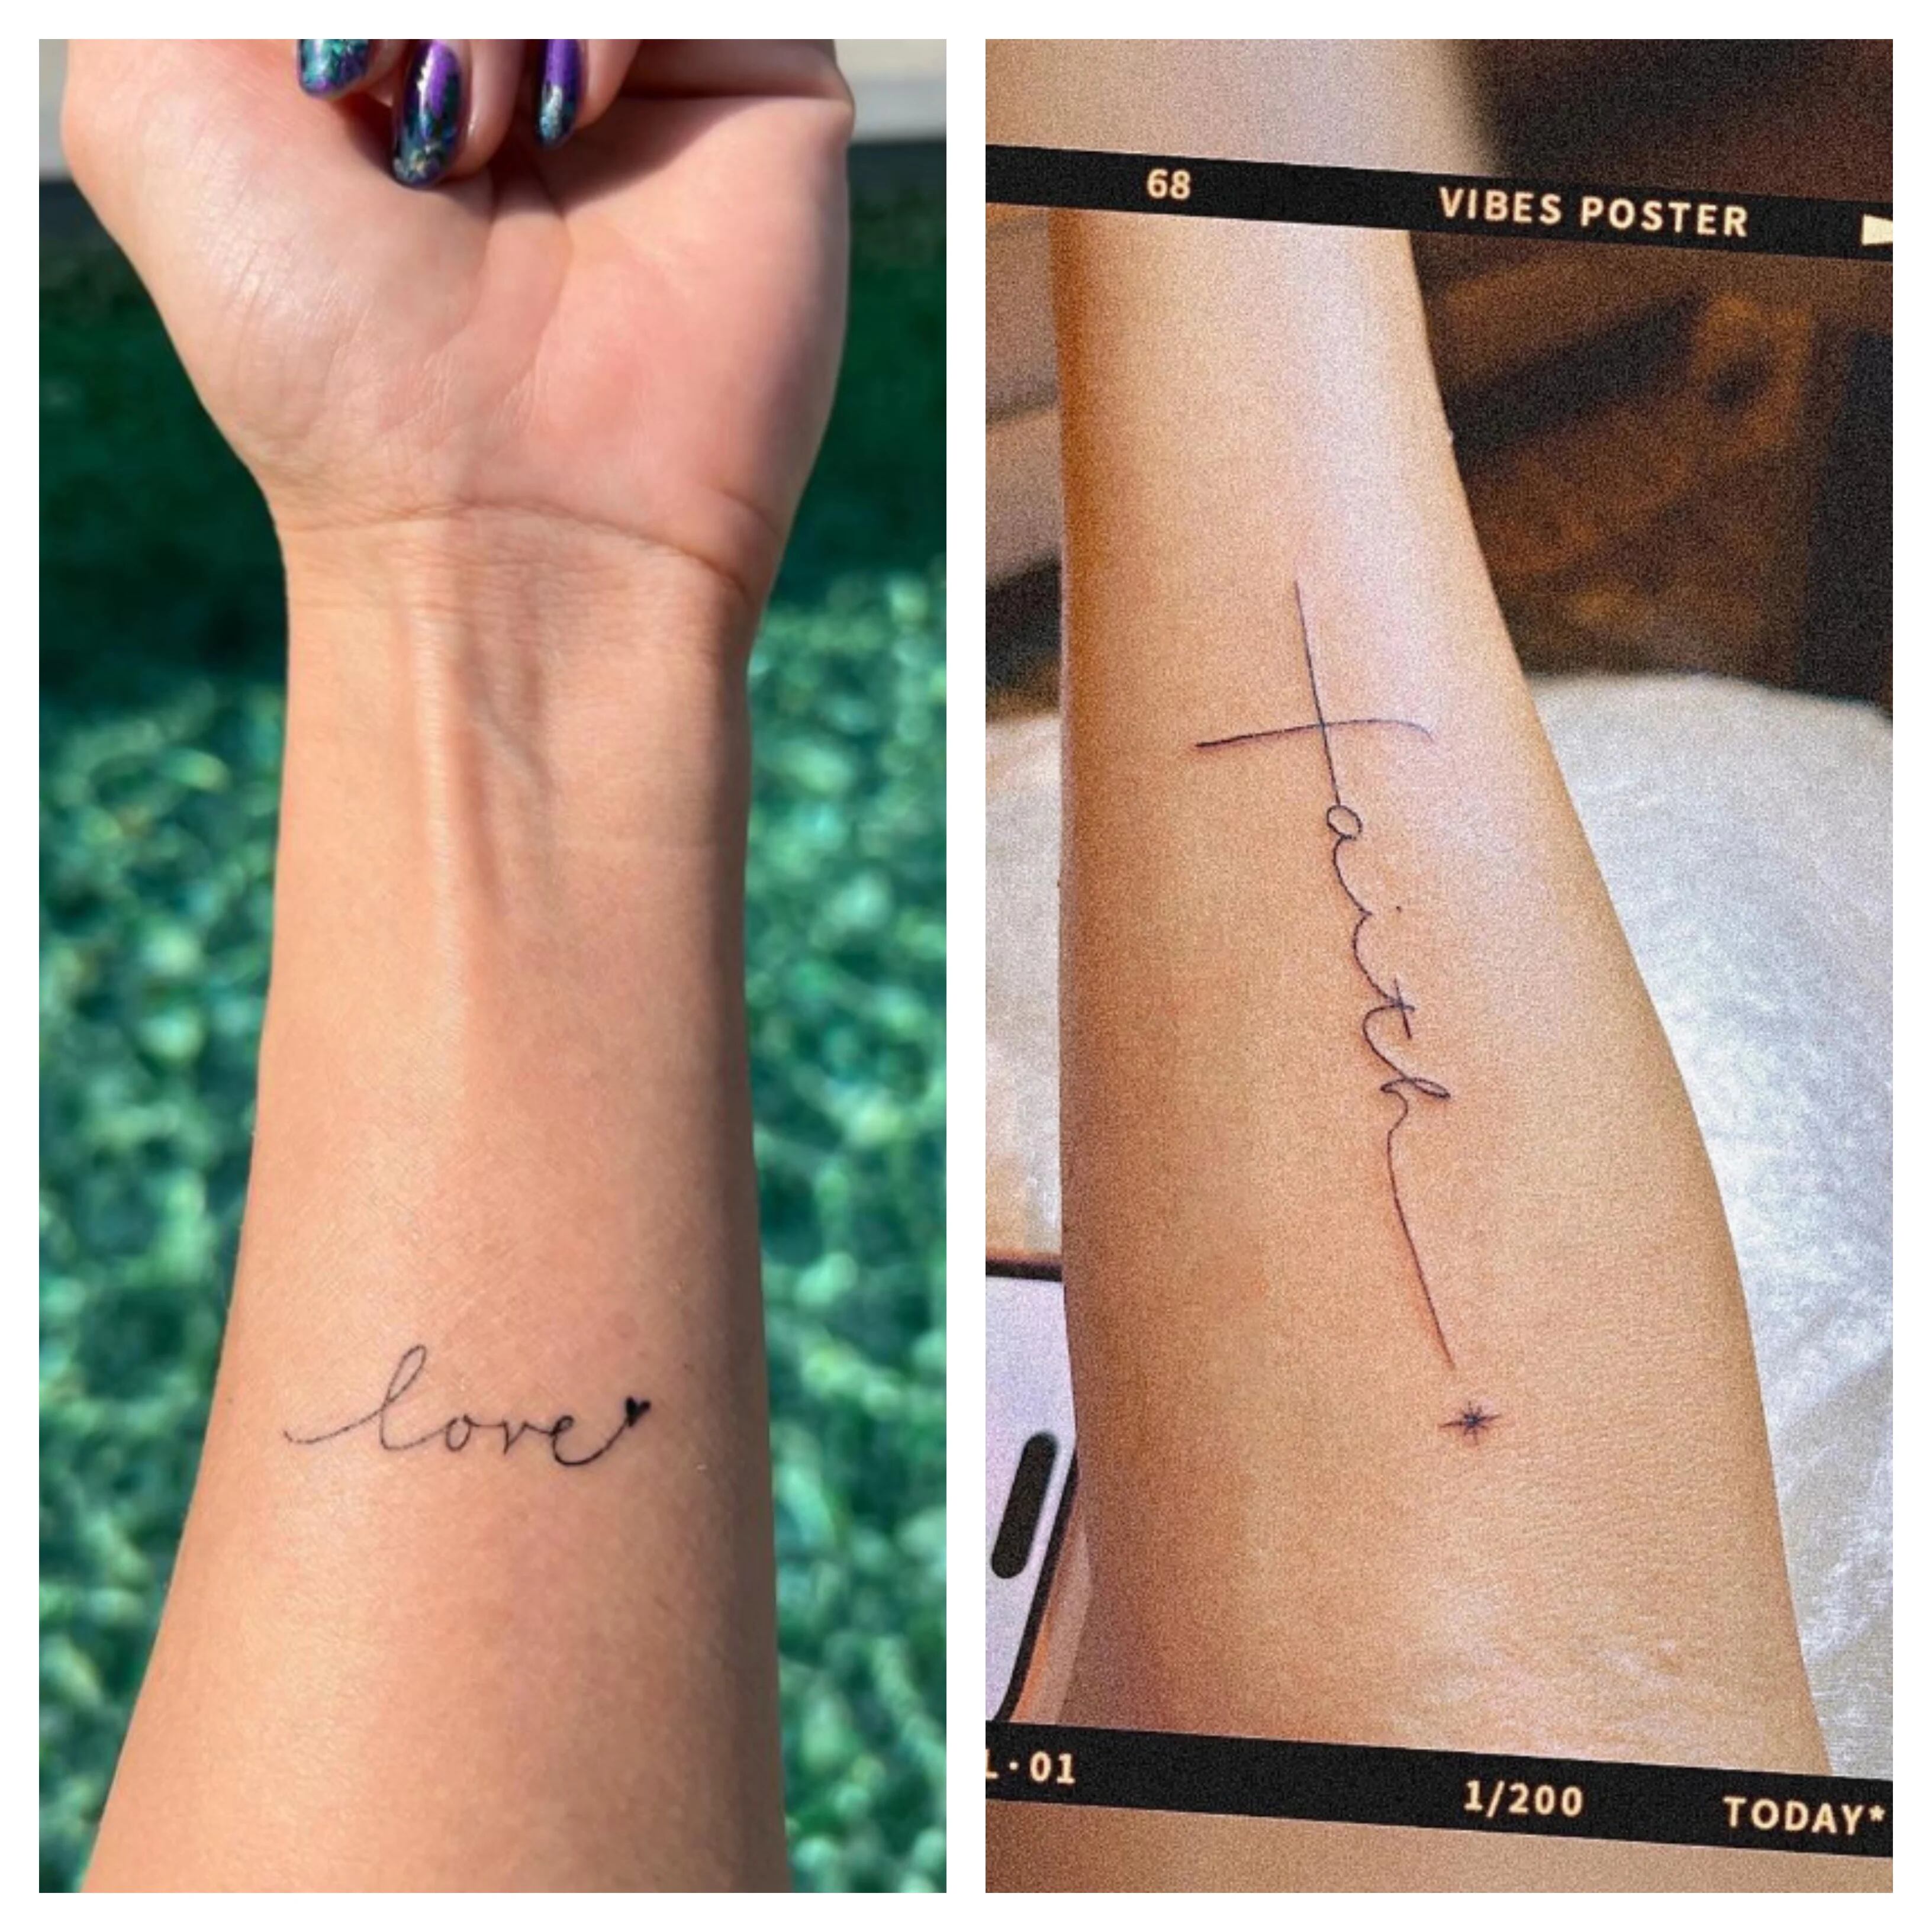 En su última publicación de Instagram, Lee compartió fotografías de sus tatuajes que decían “amor” y “fe” garabateados en sus brazos.